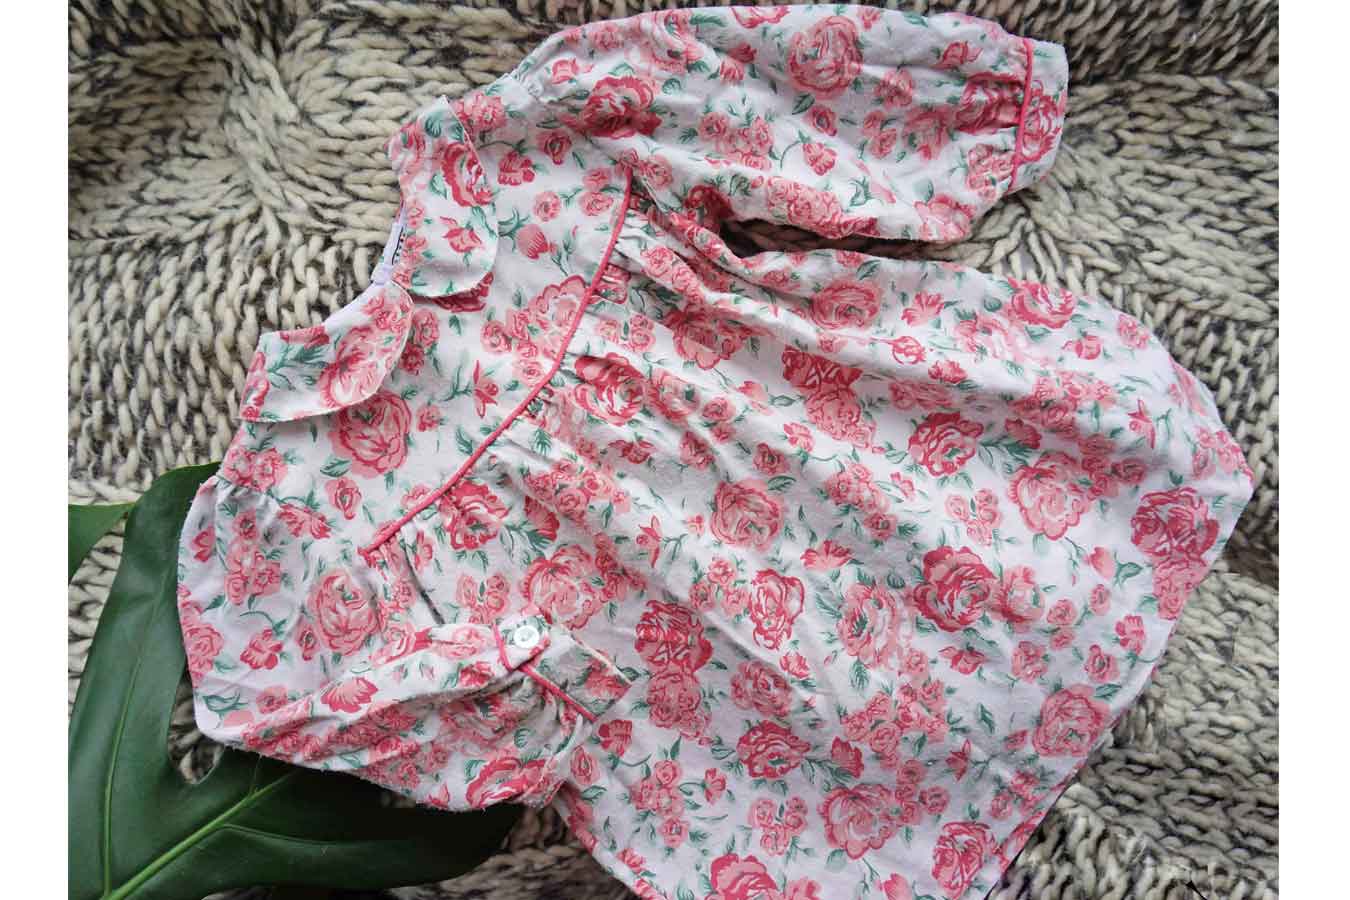 Vintage Baby Girls Pink Floral Easter Dress - vintage baby girls clothes - ada's attic vintage